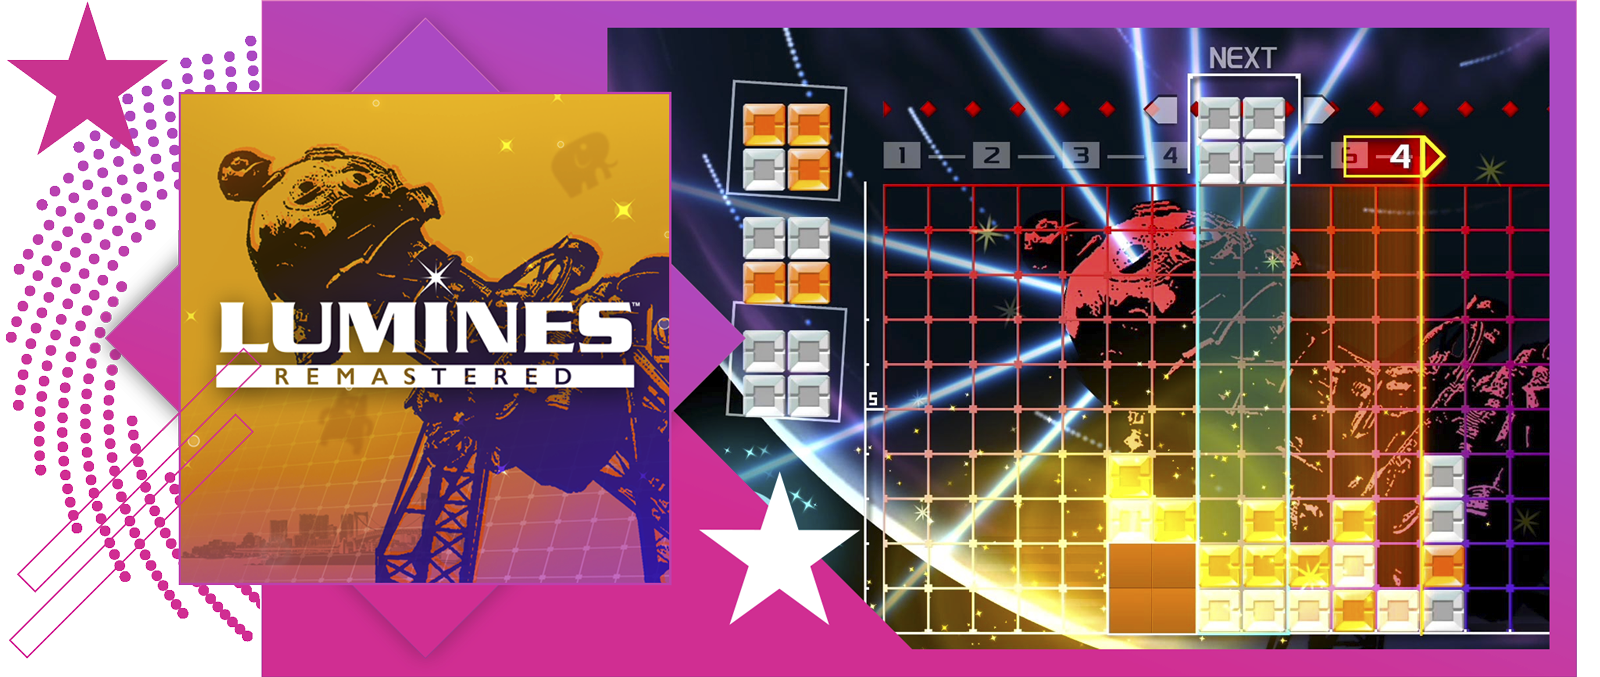 De beste rytmespillene – artikkelbilde med illustrasjon og gameplay fra Lumines Remastered.